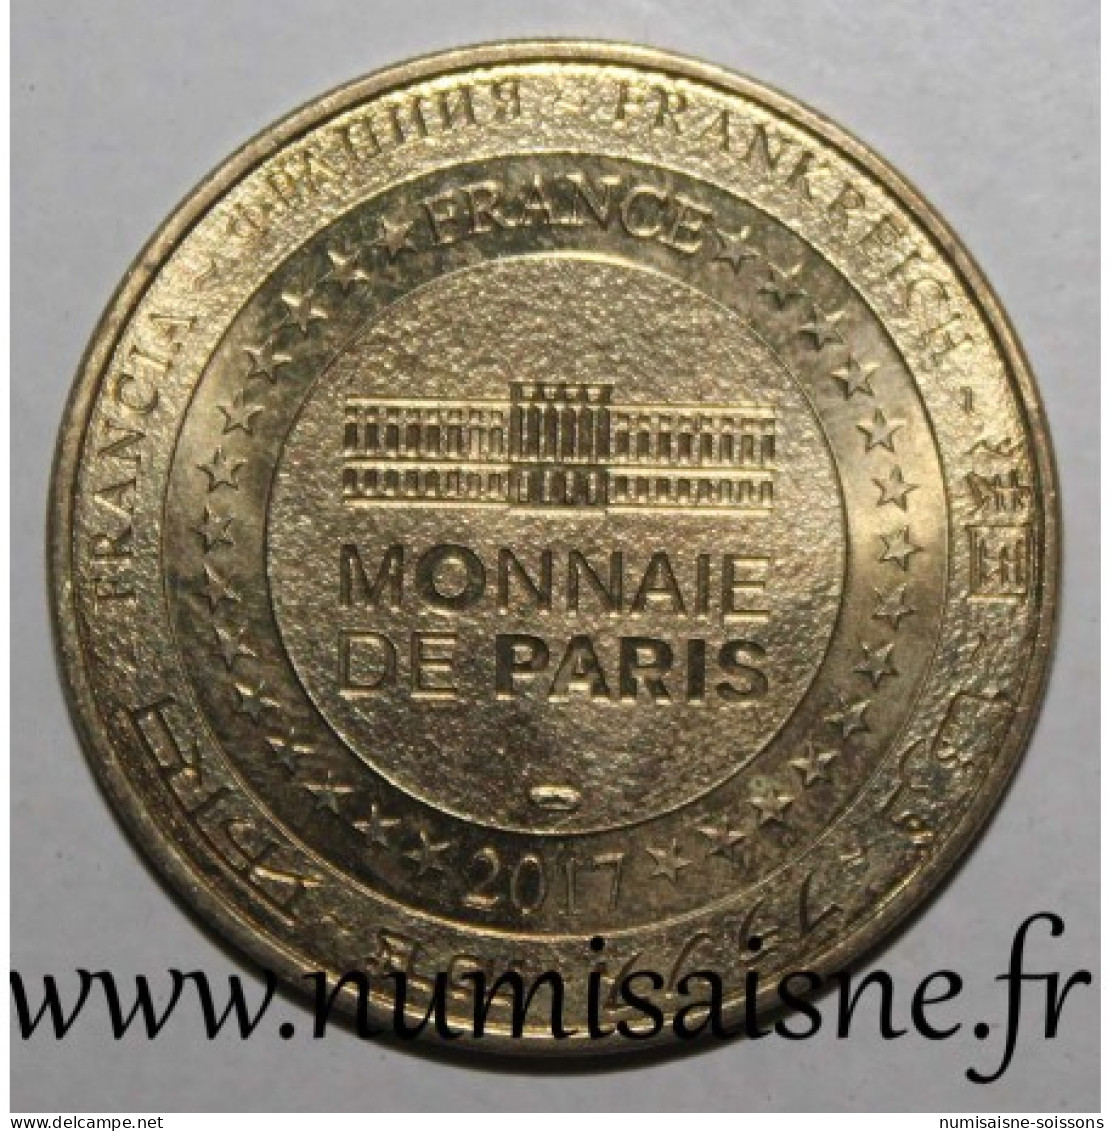 35 - SAINT MALO - GRAND AQUARIUM - POULPE - Monnaie De Paris - 2017 - Non-datés